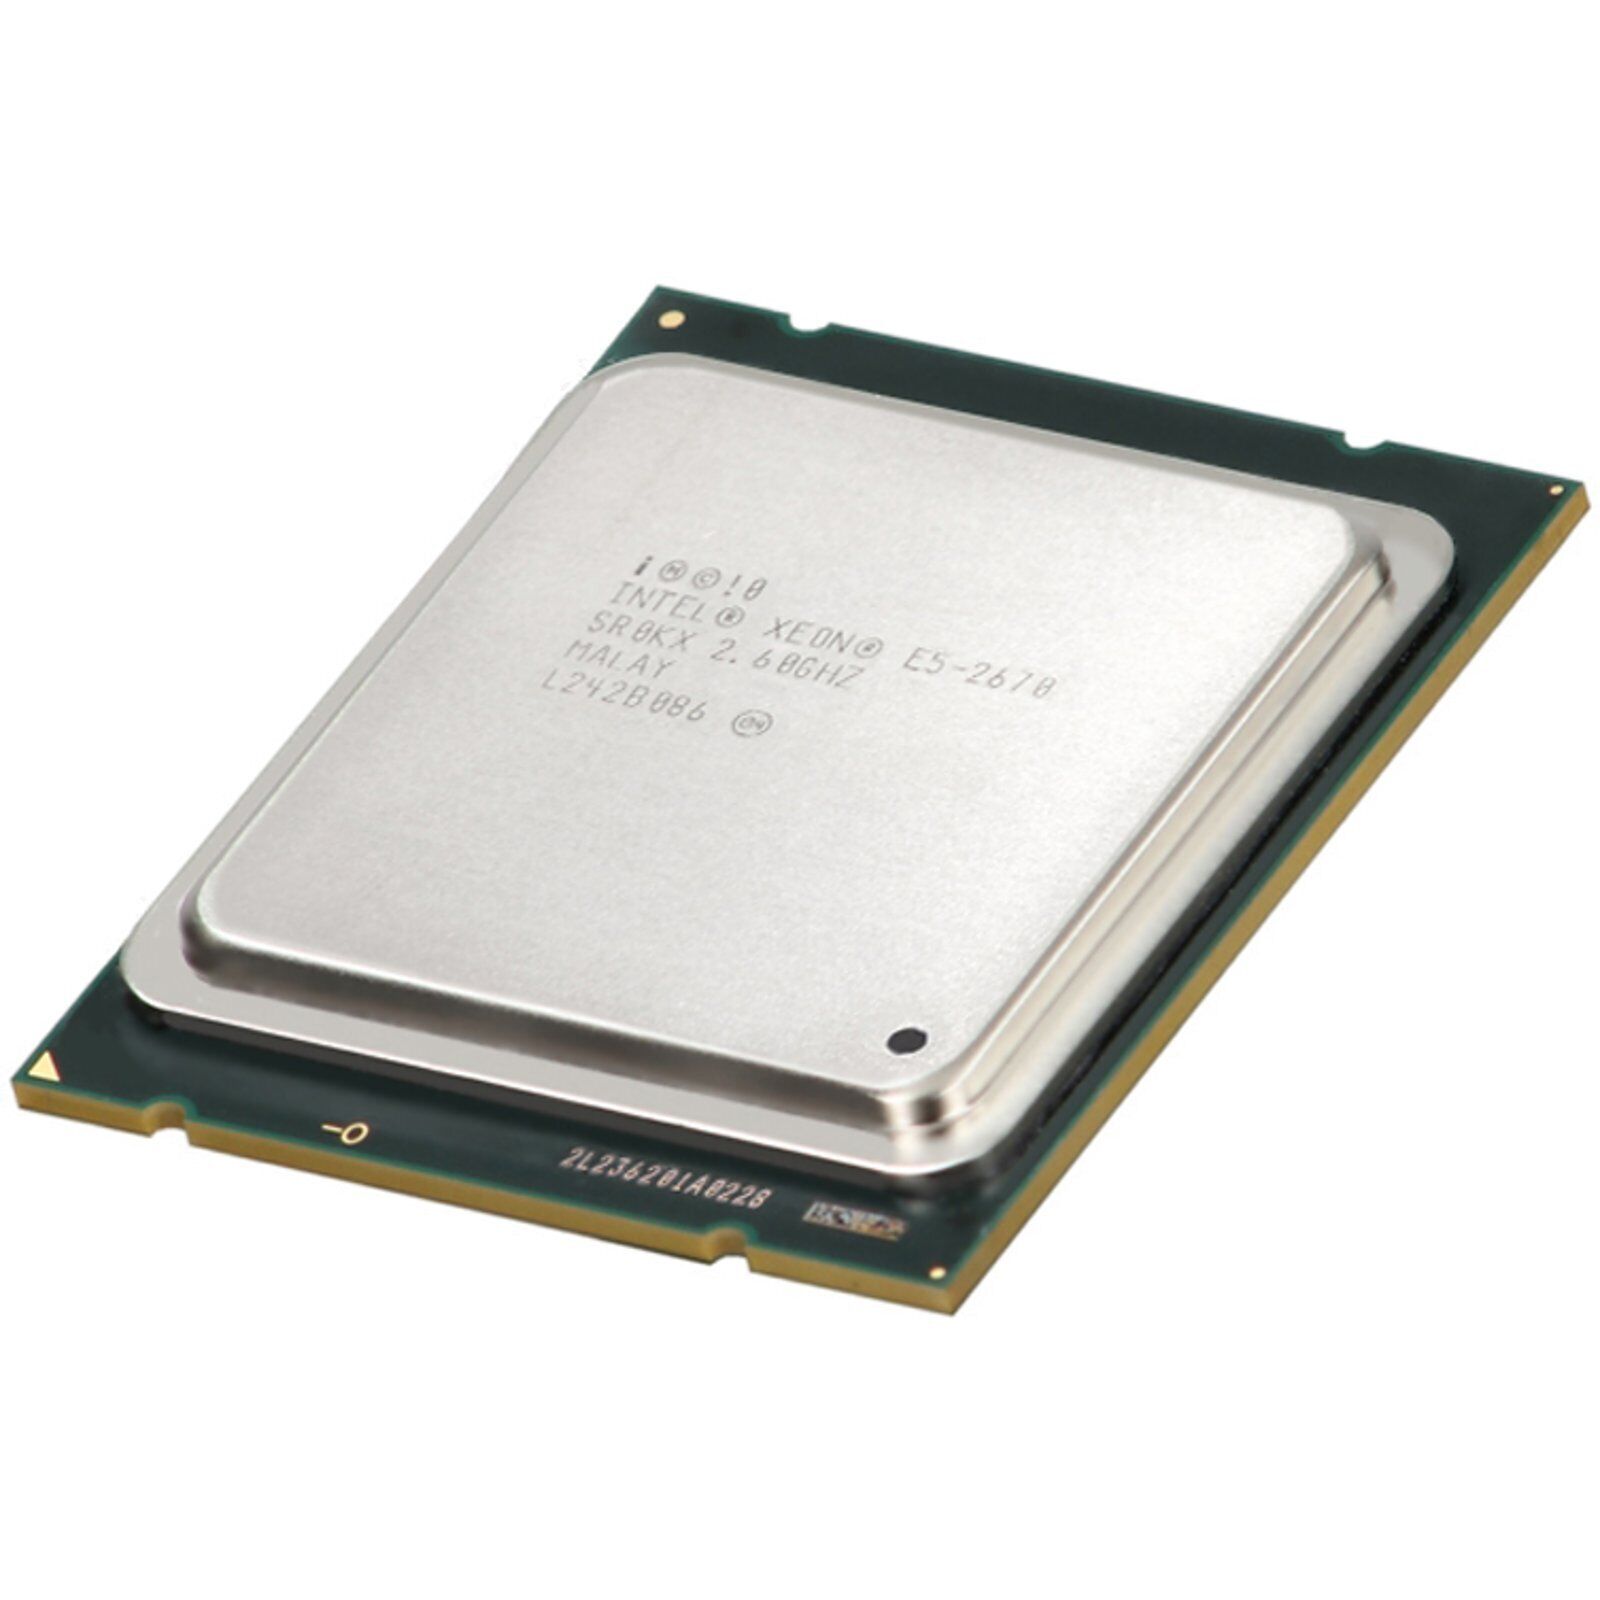 Intel Xeon E5-2670 2.6GHz/20M/1600MHz 8-Core 115W (SR0KX)